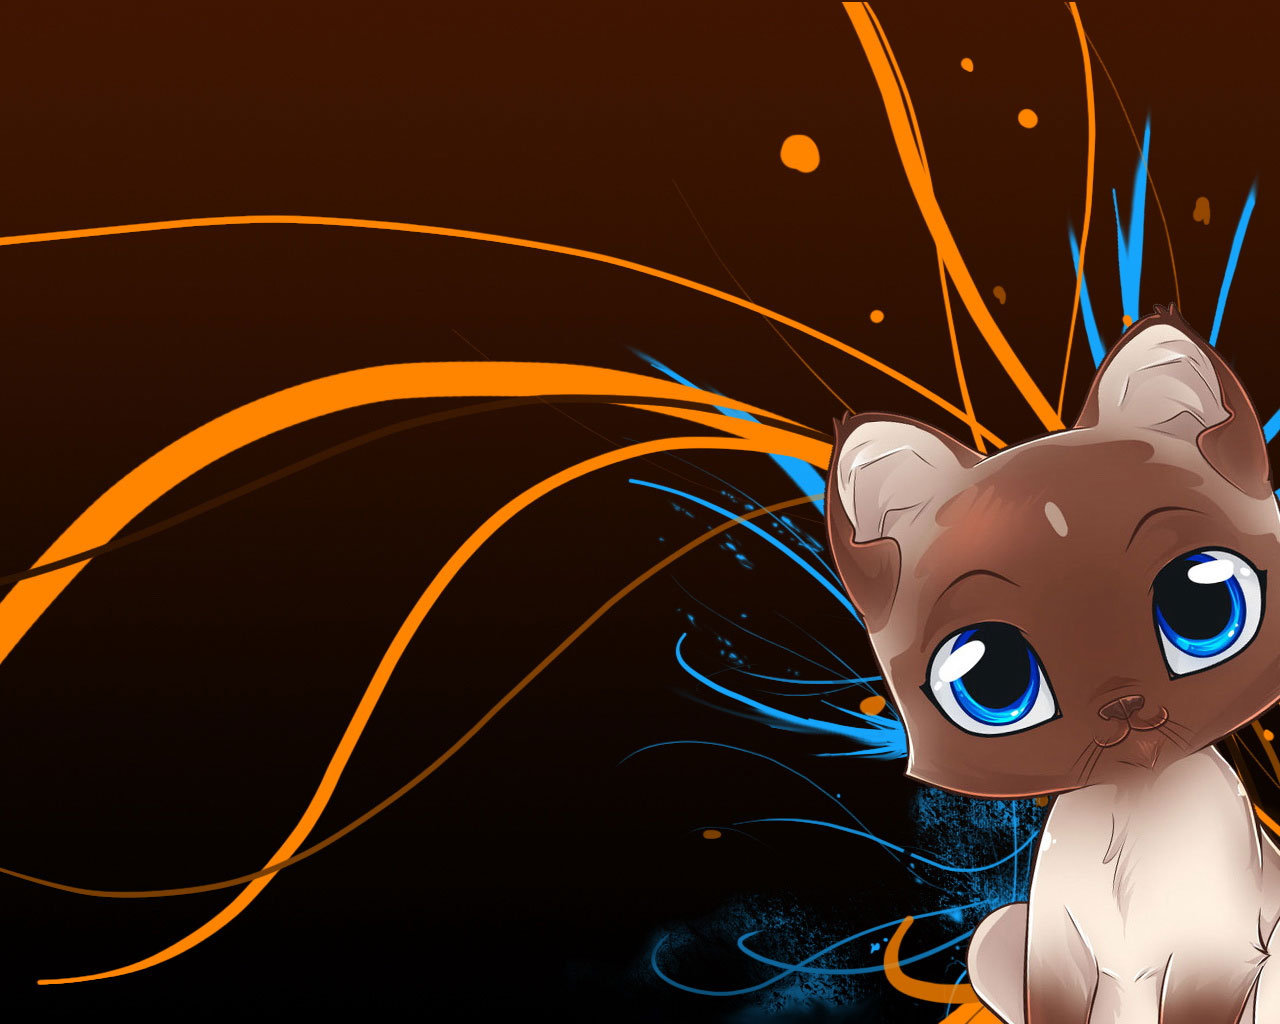  Animated  Cat  Wallpaper  for Desktop WallpaperSafari